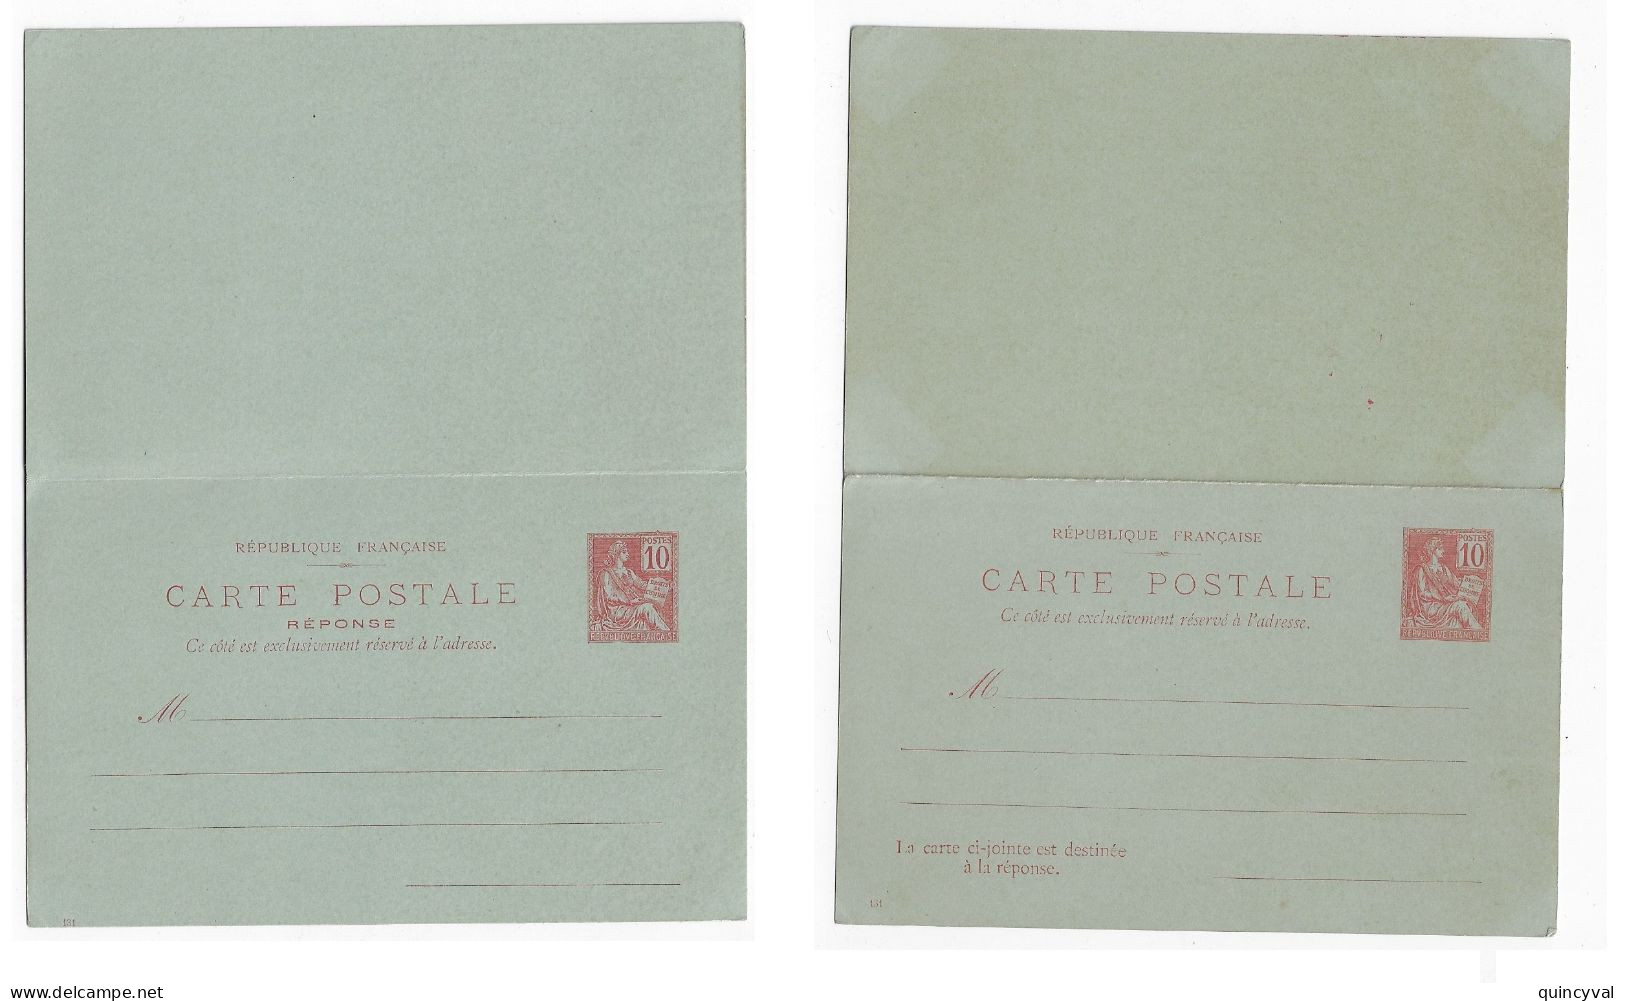 Carte Postale Entier Postal Avec Réponse Payée 10c Mouchon Millésime 131 Yv 112-CPRP1 Storch 1902 D6 - Standard Postcards & Stamped On Demand (before 1995)